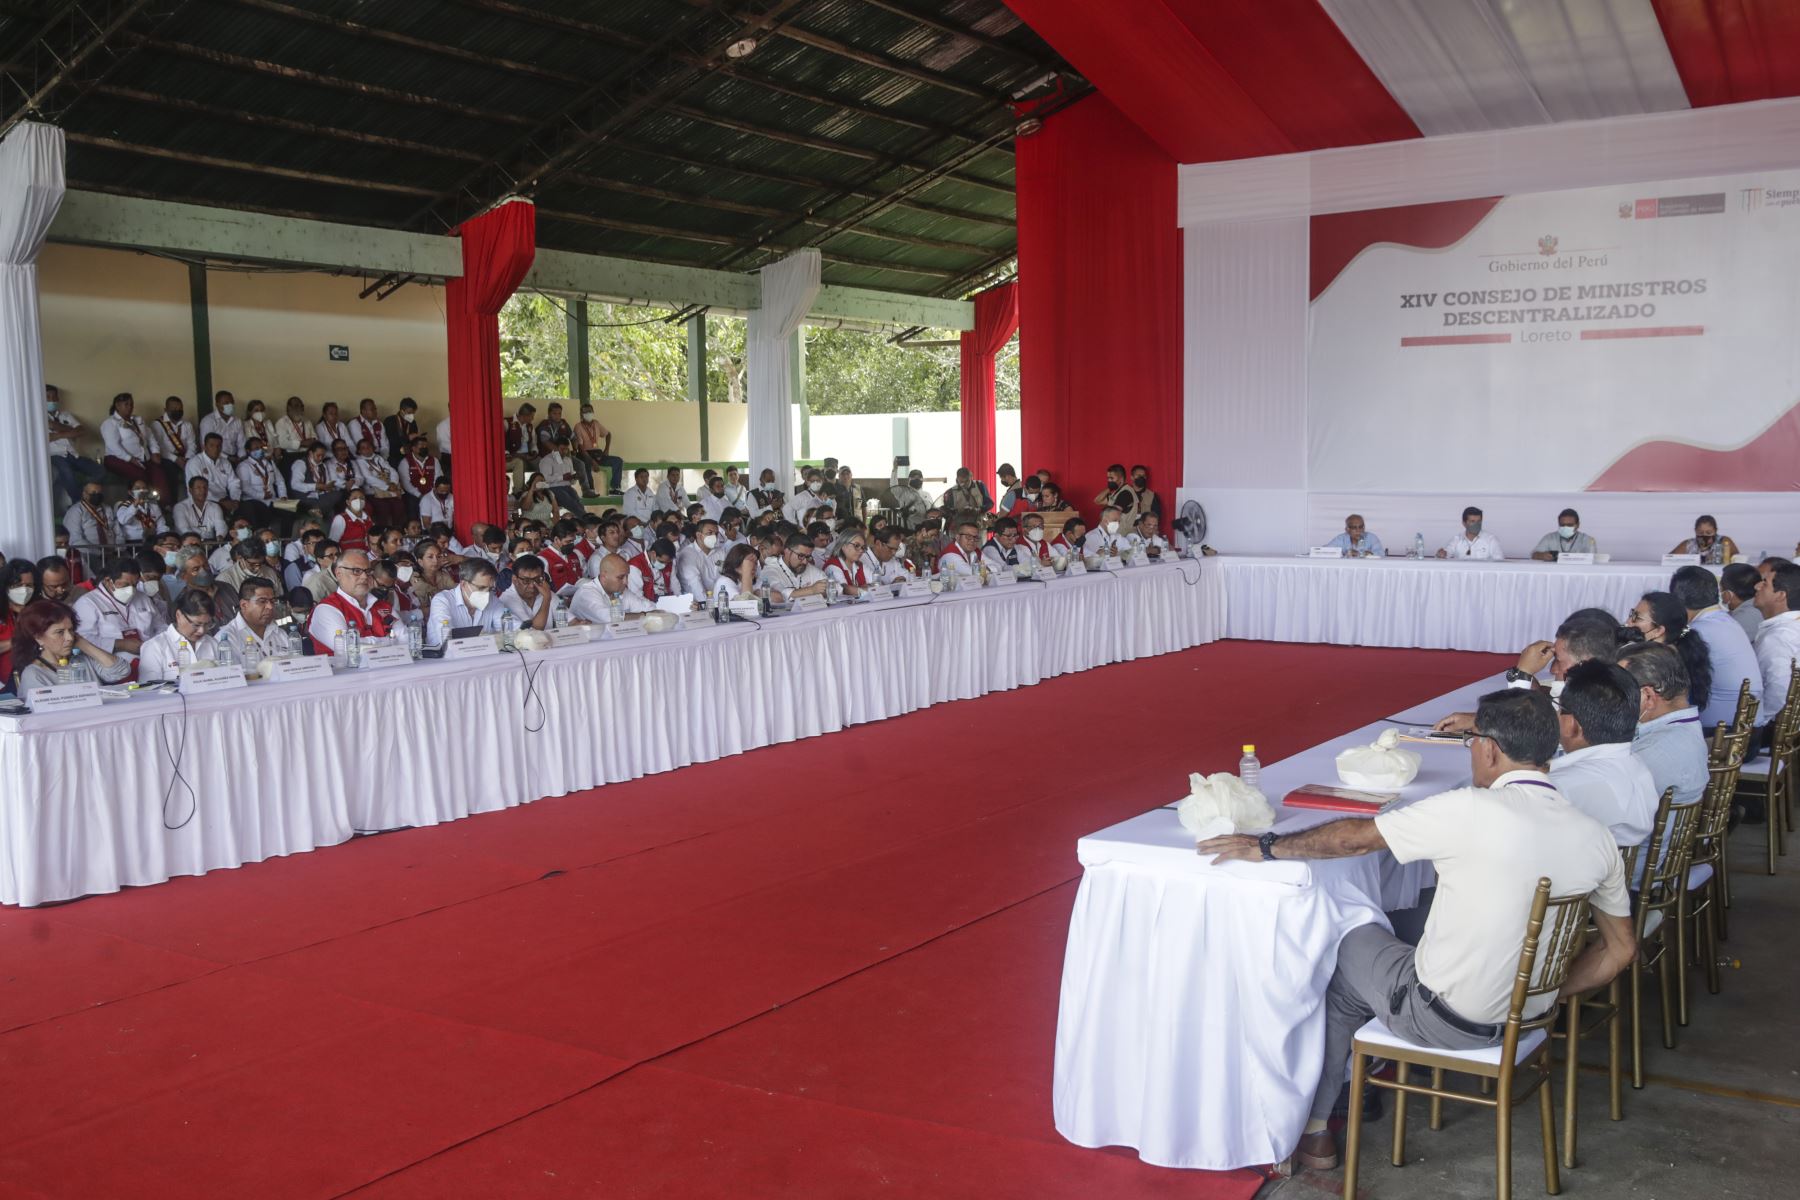 Gobierno realiza hoy en Tacna XVI Consejo de Ministros Descentralizado